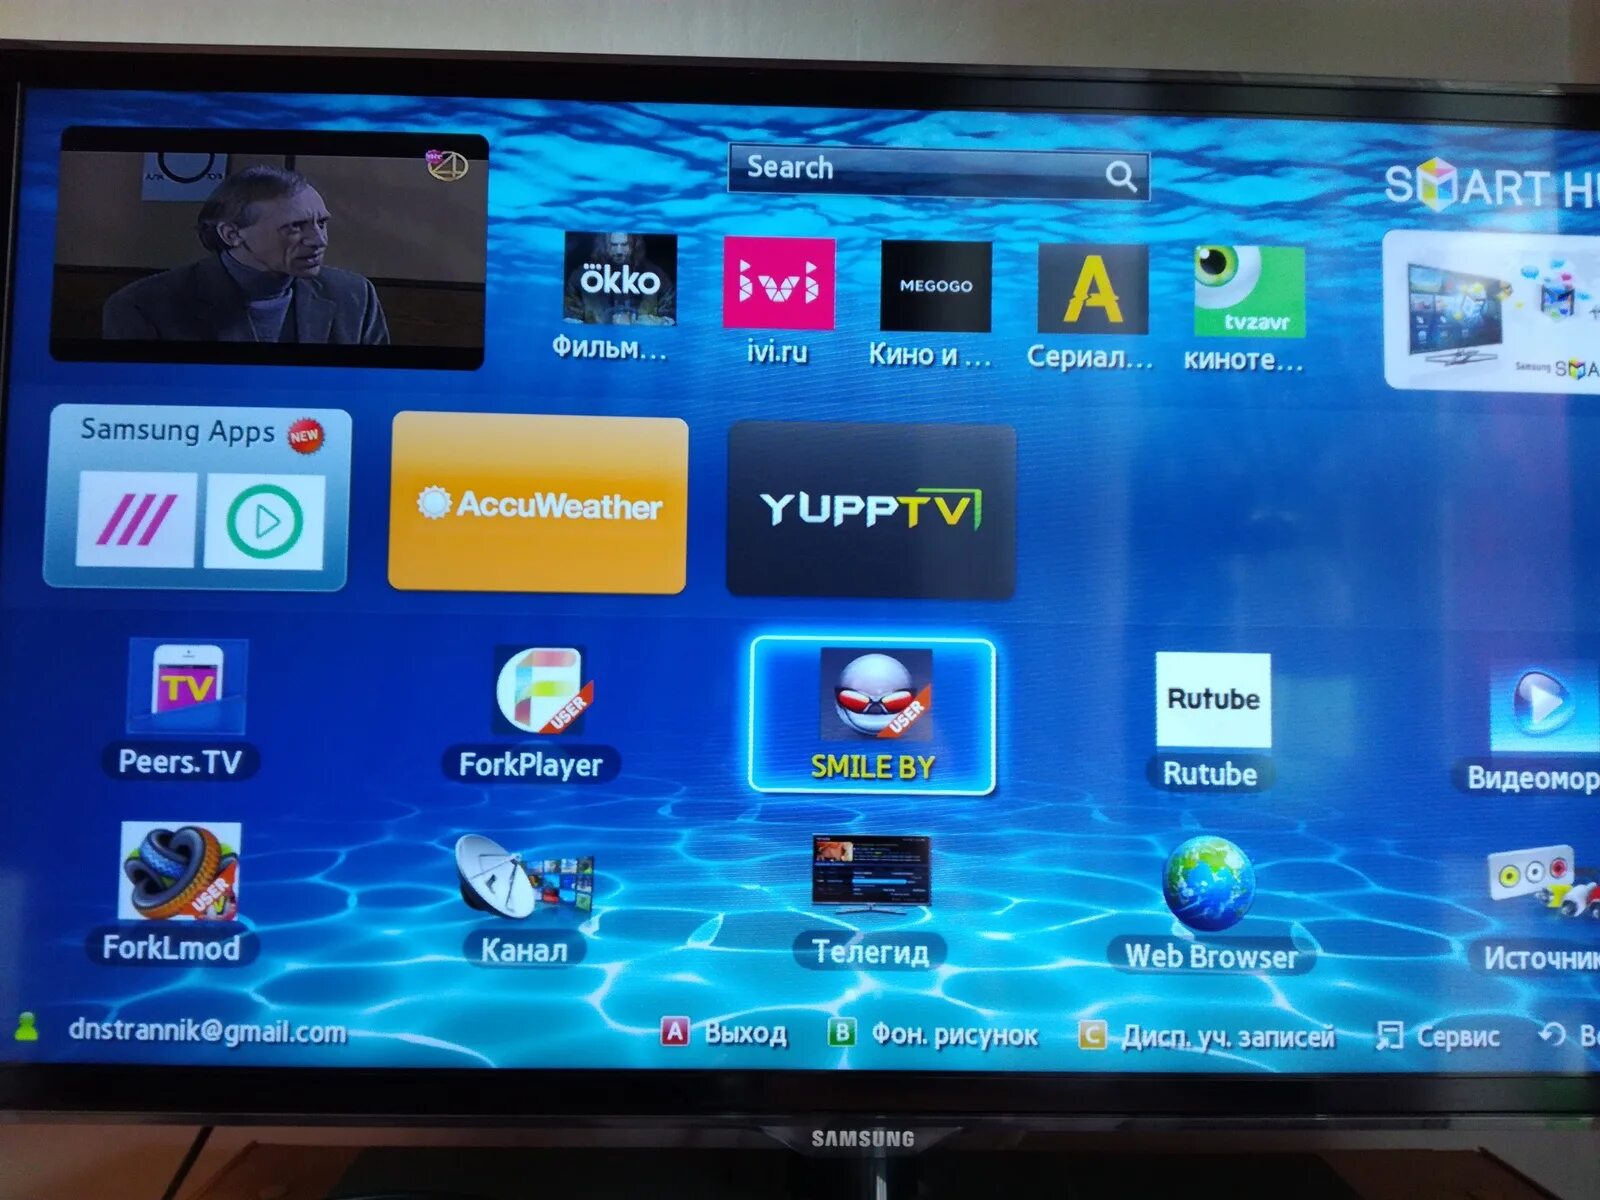 Приложение для телевизора для просмотра видео. Телевизор Samsung смарт ТВ каналы. Samsung apps для Smart TV. Телевизор самсунг не смарт ТВ. ТВ приставка самсунг смарт ТВ.